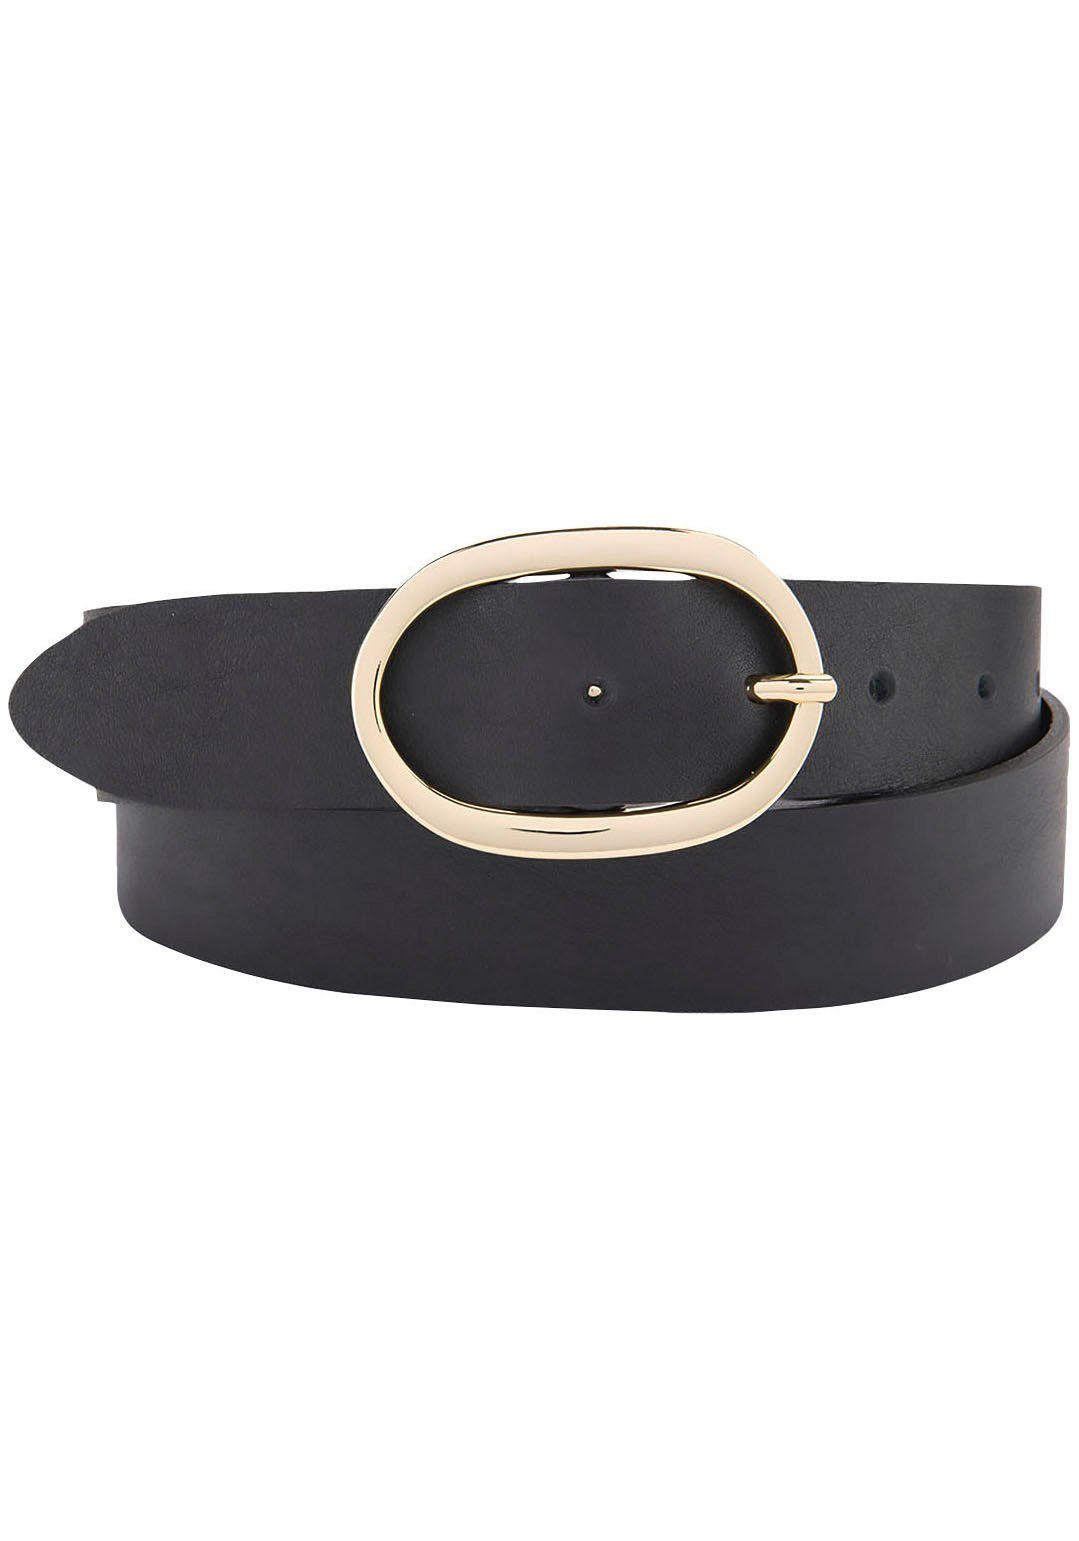 BERND GÖTZ Ledergürtel Ledergürtel Vollrind schwarz Ovalschließe aus goldener mit eleganter